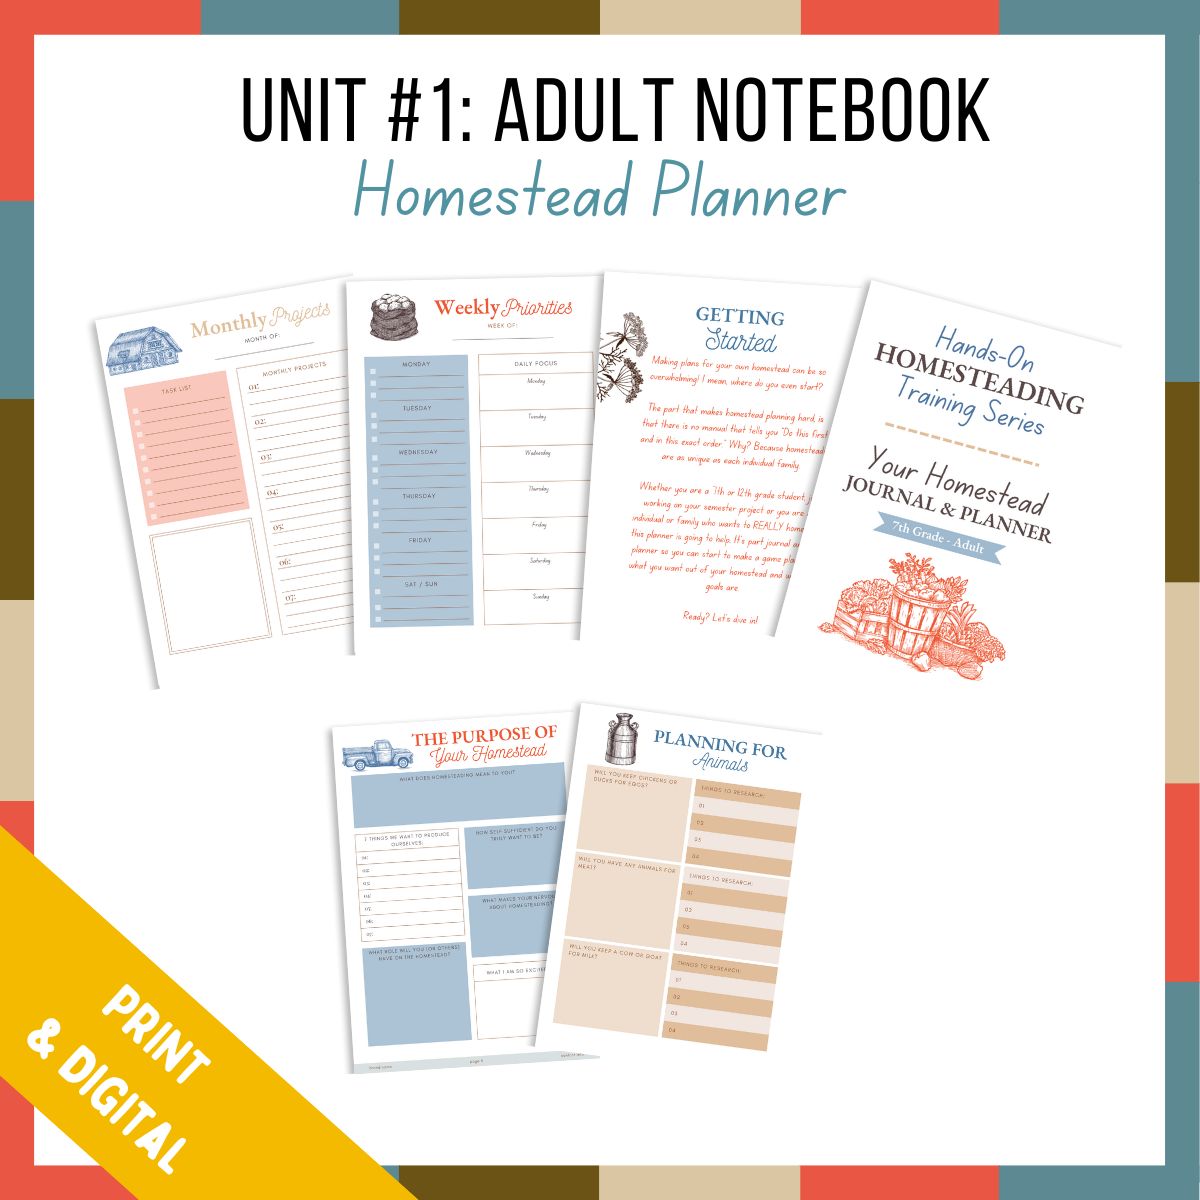 Unit #1: Adult Homestead Planner - PRINT